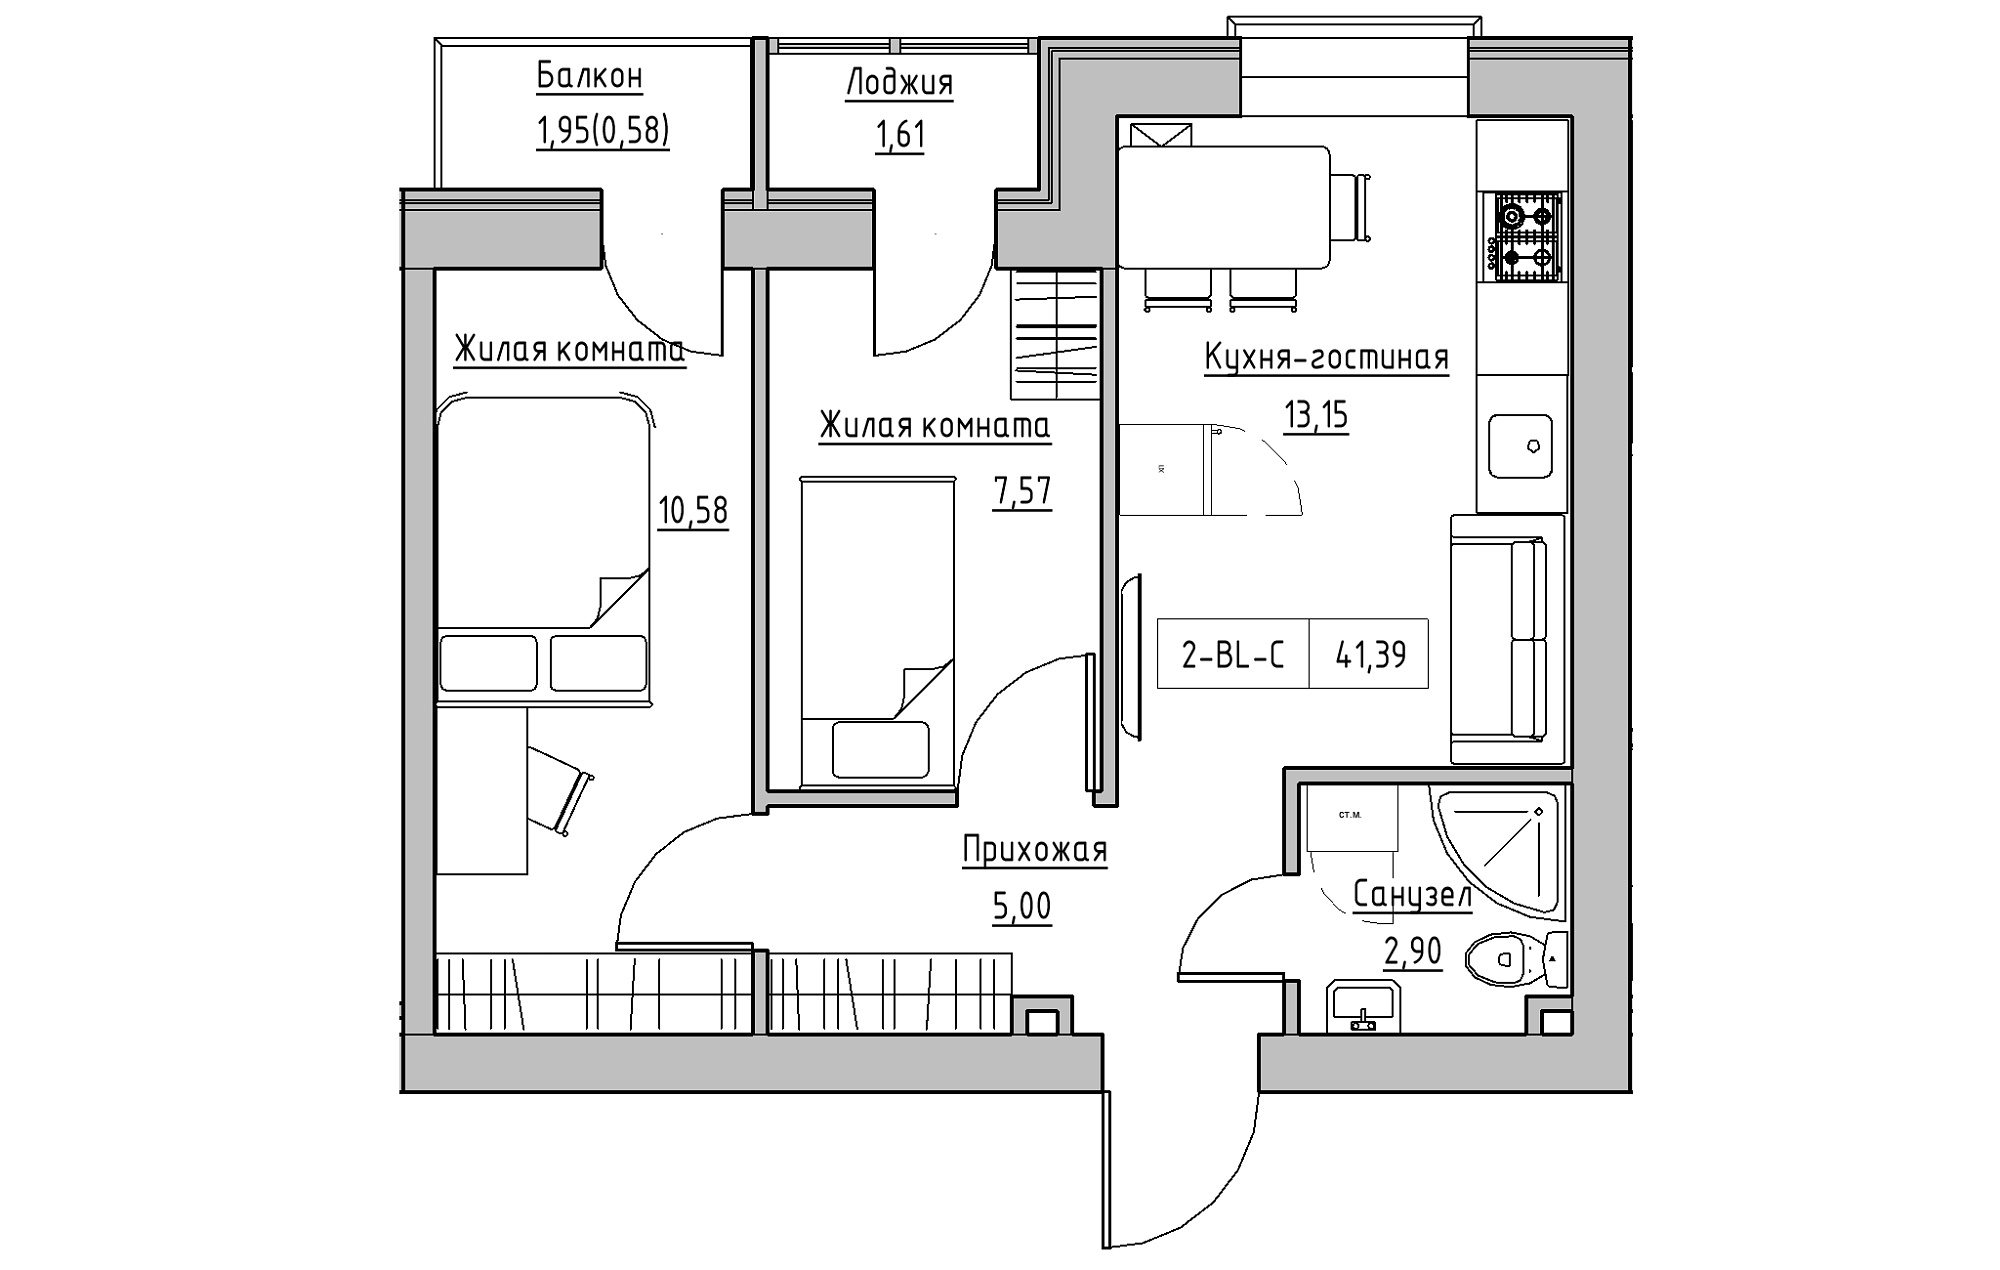 Планировка 2-к квартира площей 41.39м2, KS-018-02/0005.